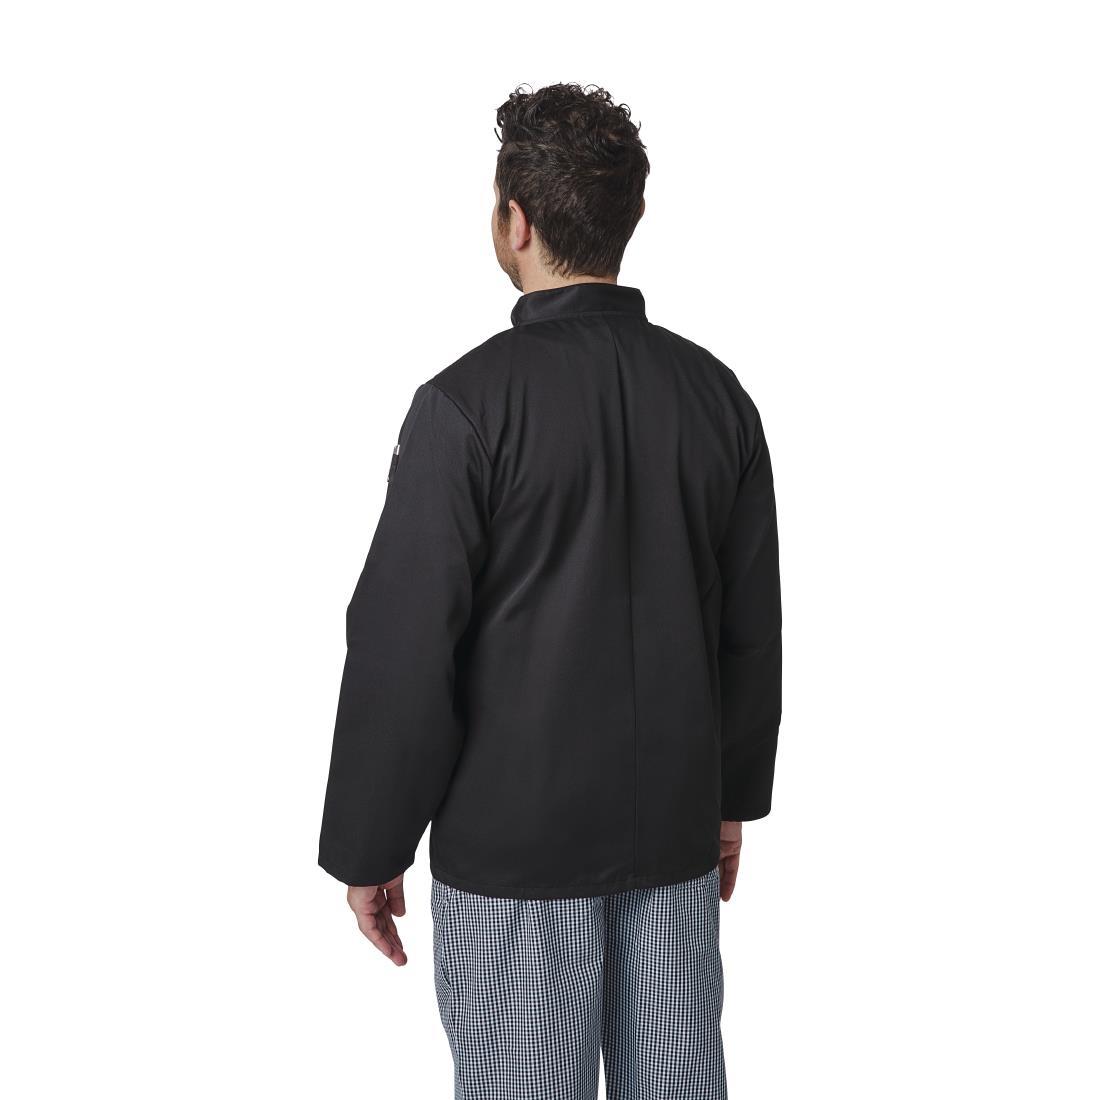 Whites Vegas Unisex Chefs Jacket Long Sleeve Black M - A438-M  - 6